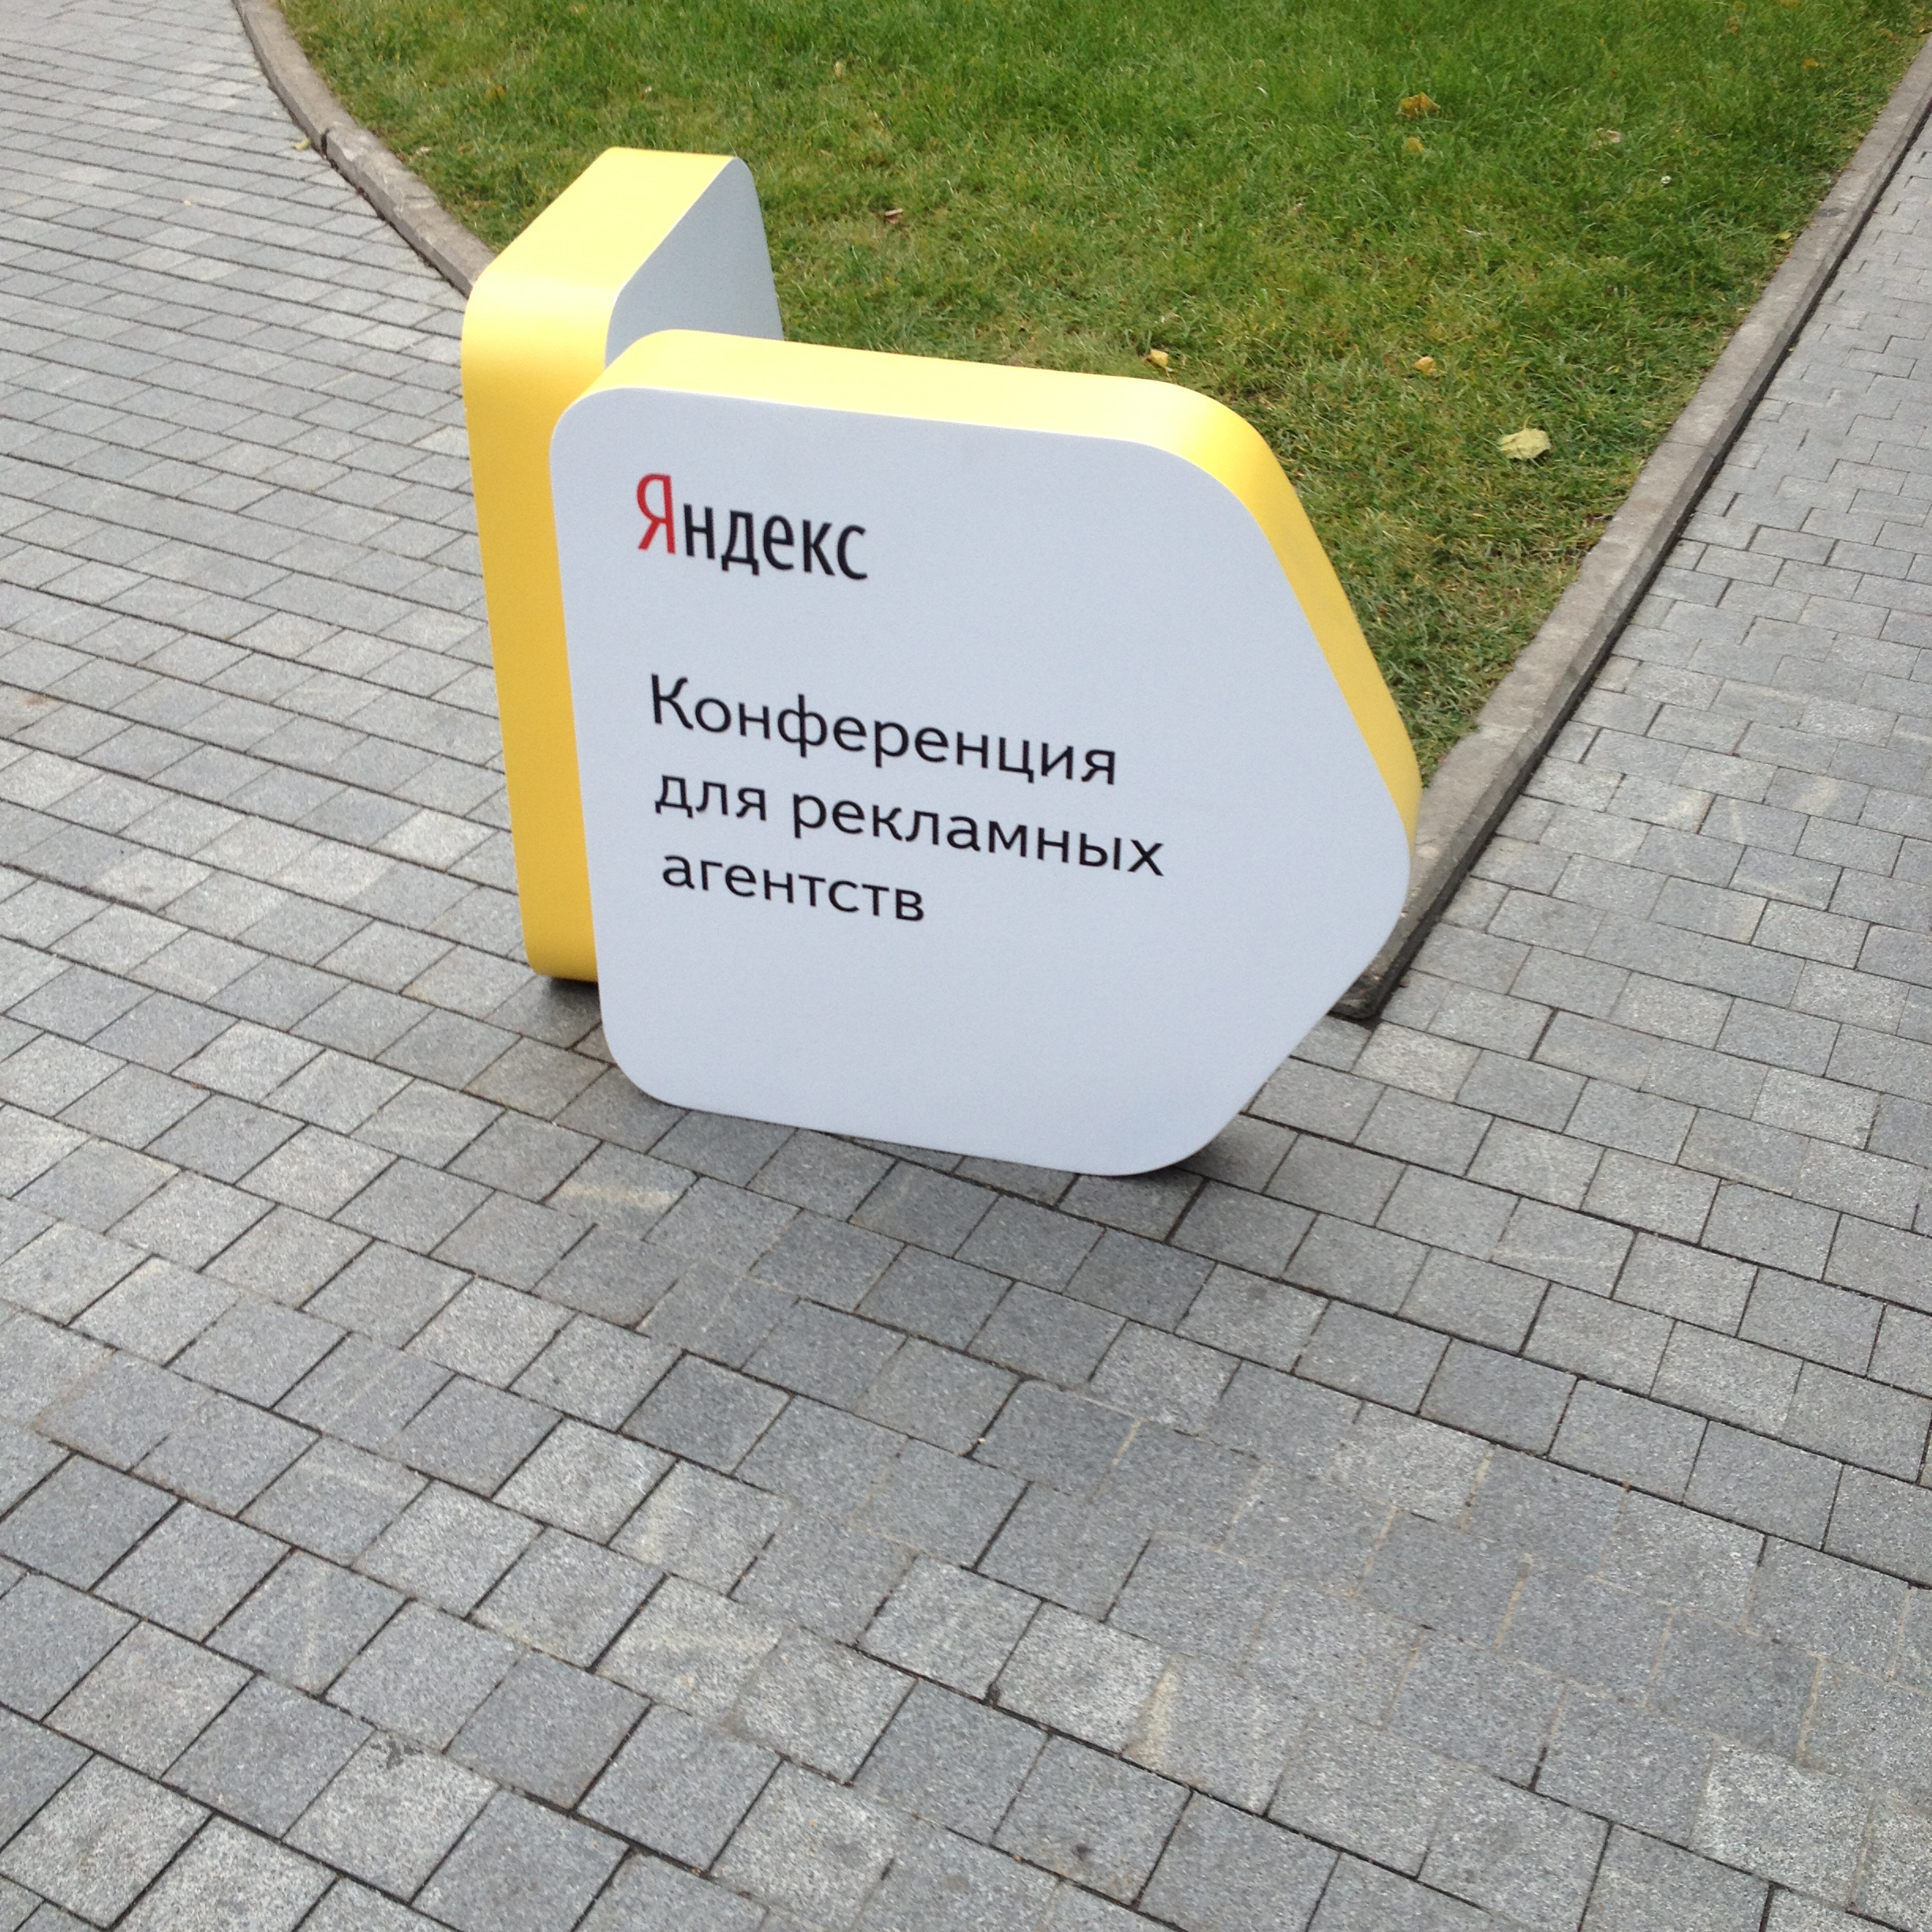 Большая конференция для рекламных агентств в Яндексе